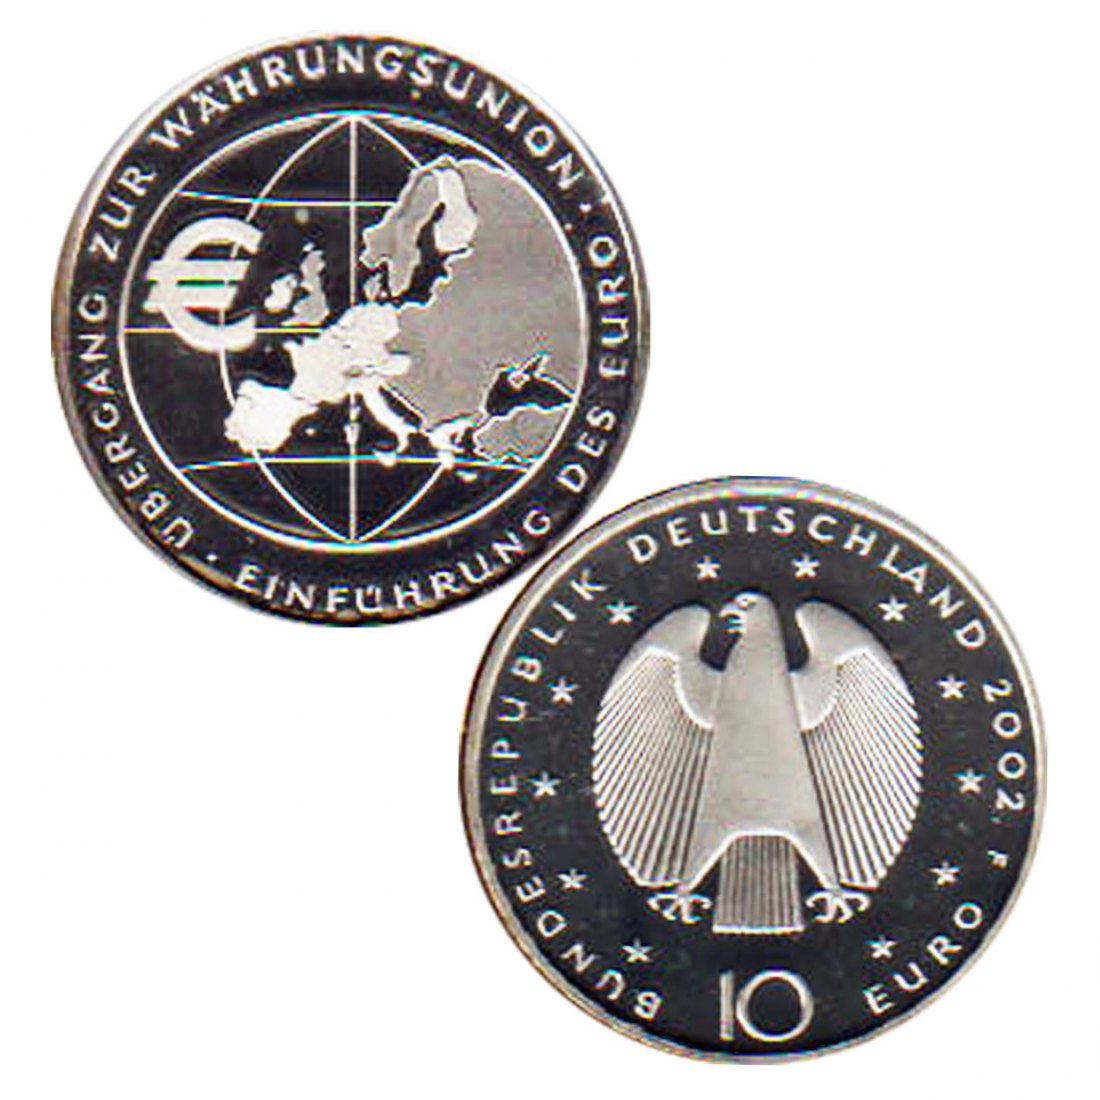  Offiz. 10-Euro-Silbermünze BRD *Europäische Währungsunion* 2002 *PP*   